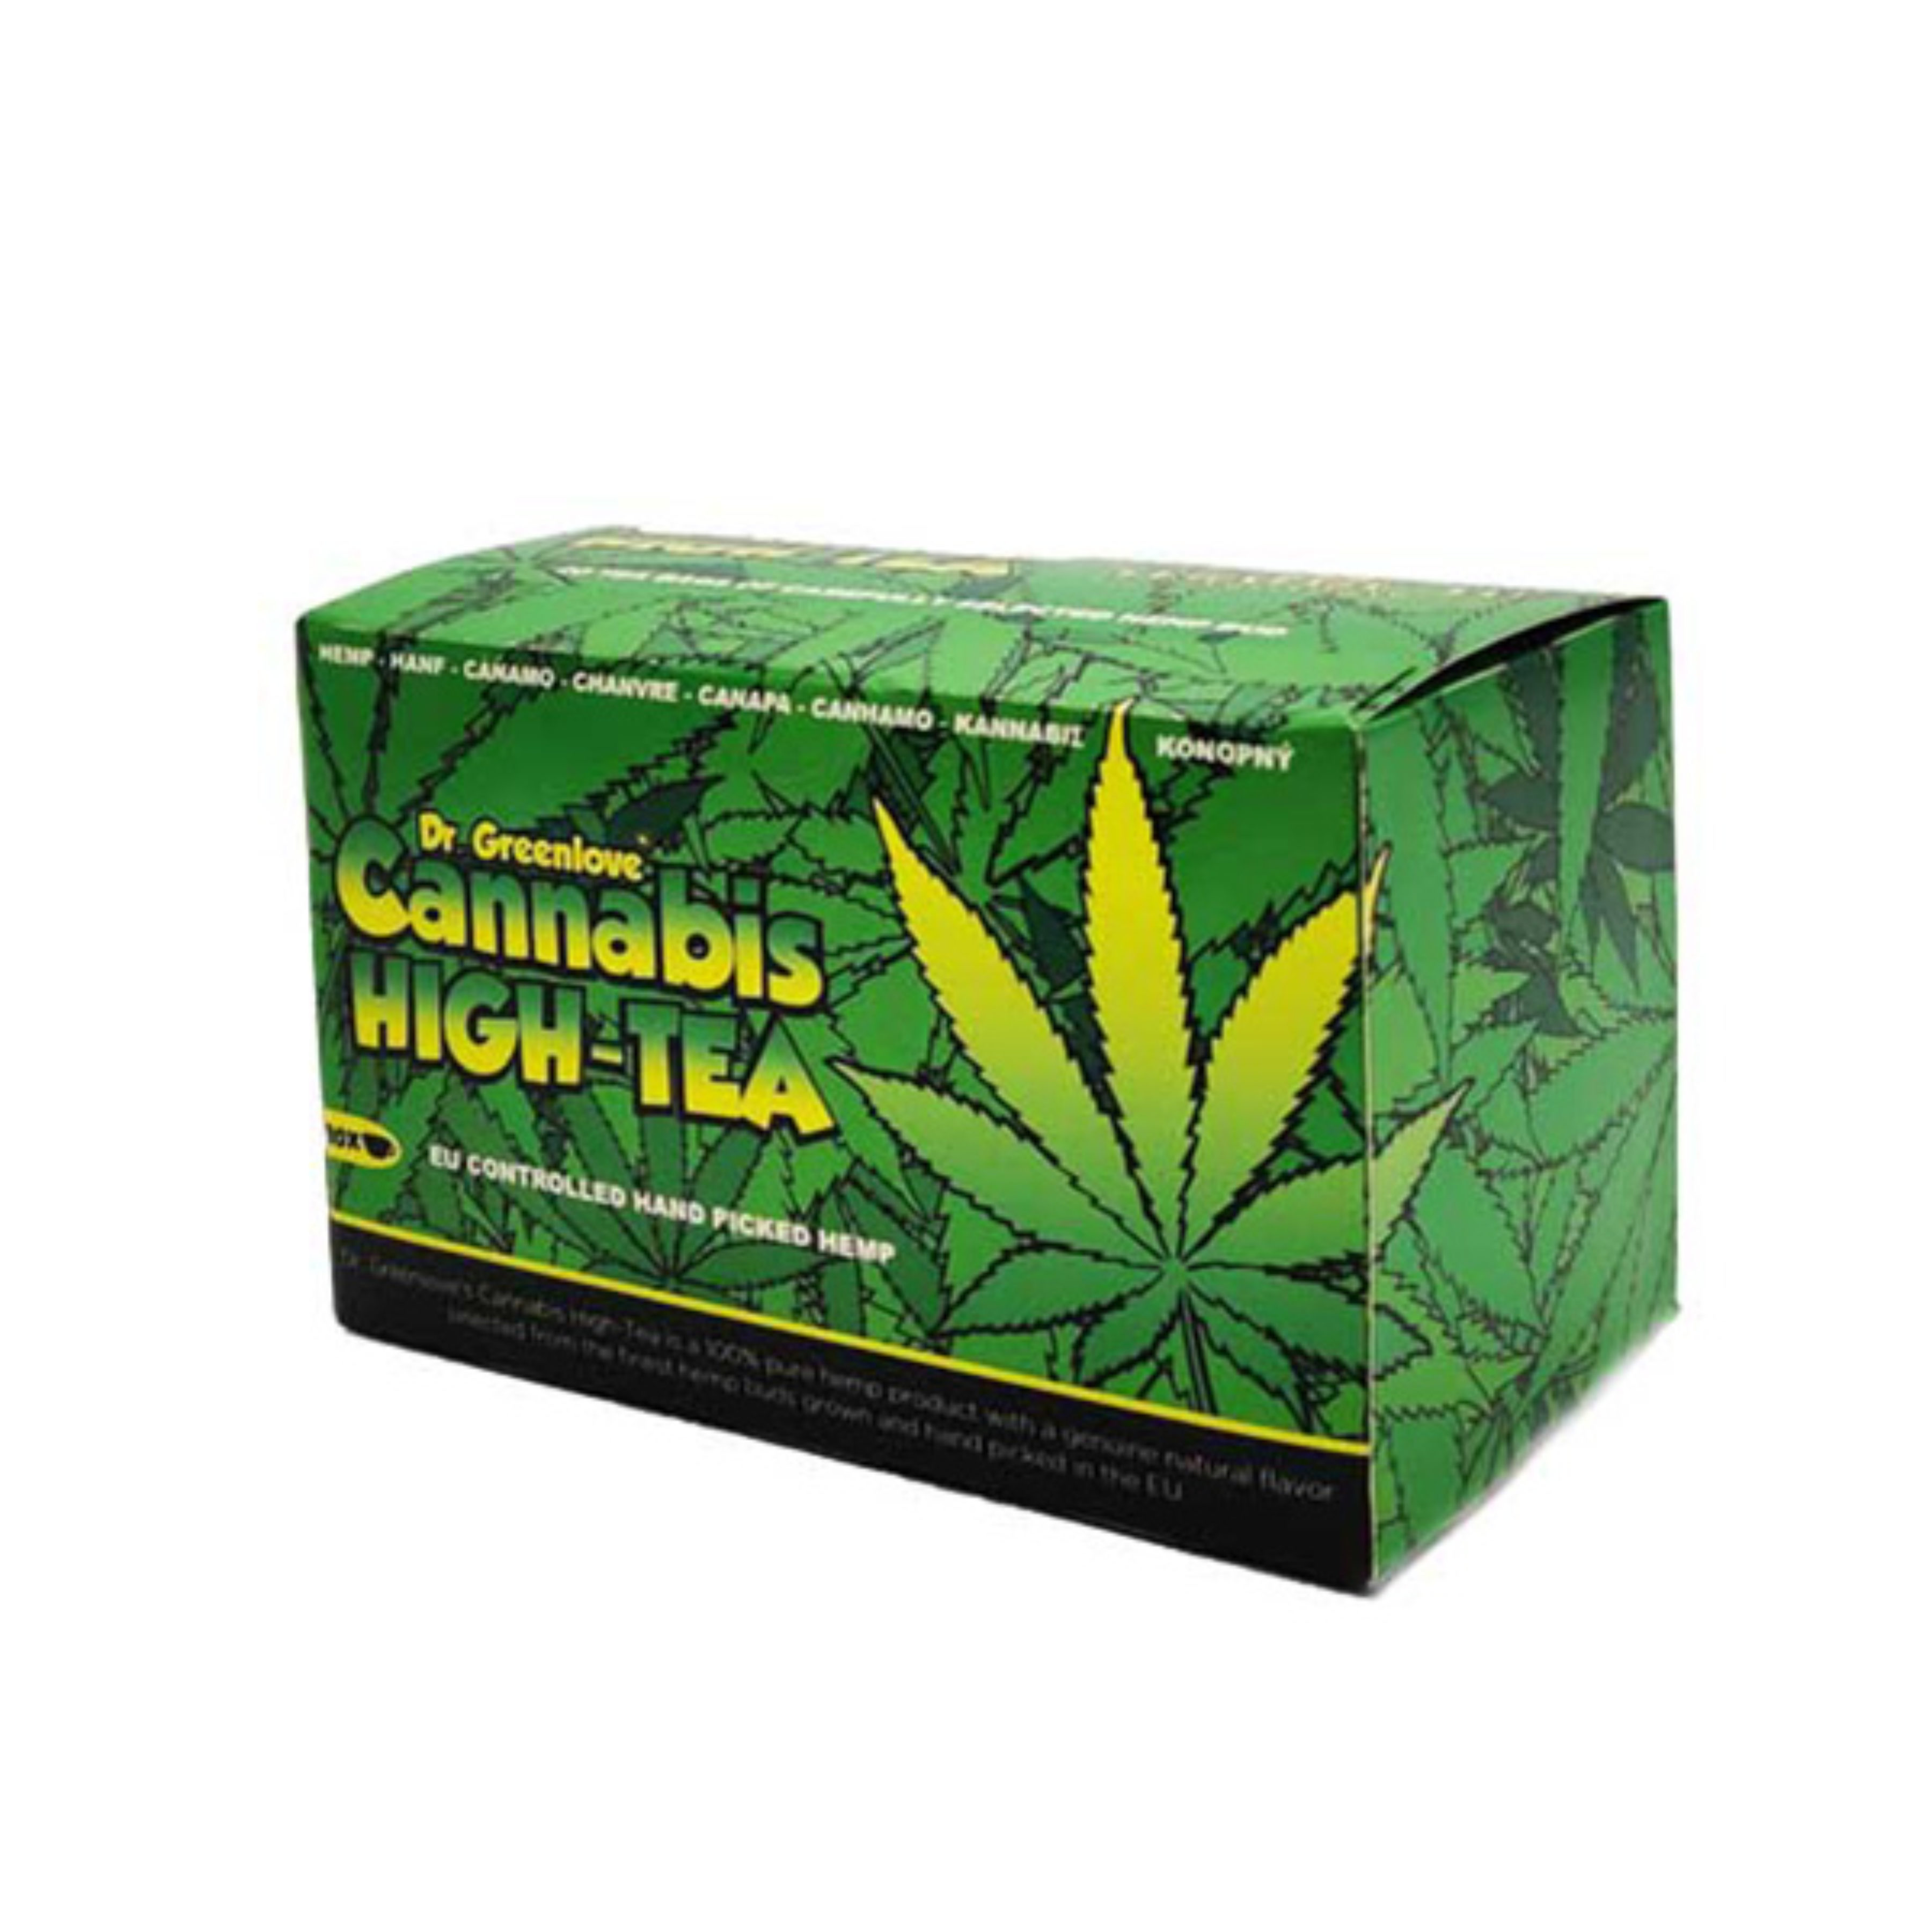 achat cbd Dr Greenlove – Cannabis high-tea